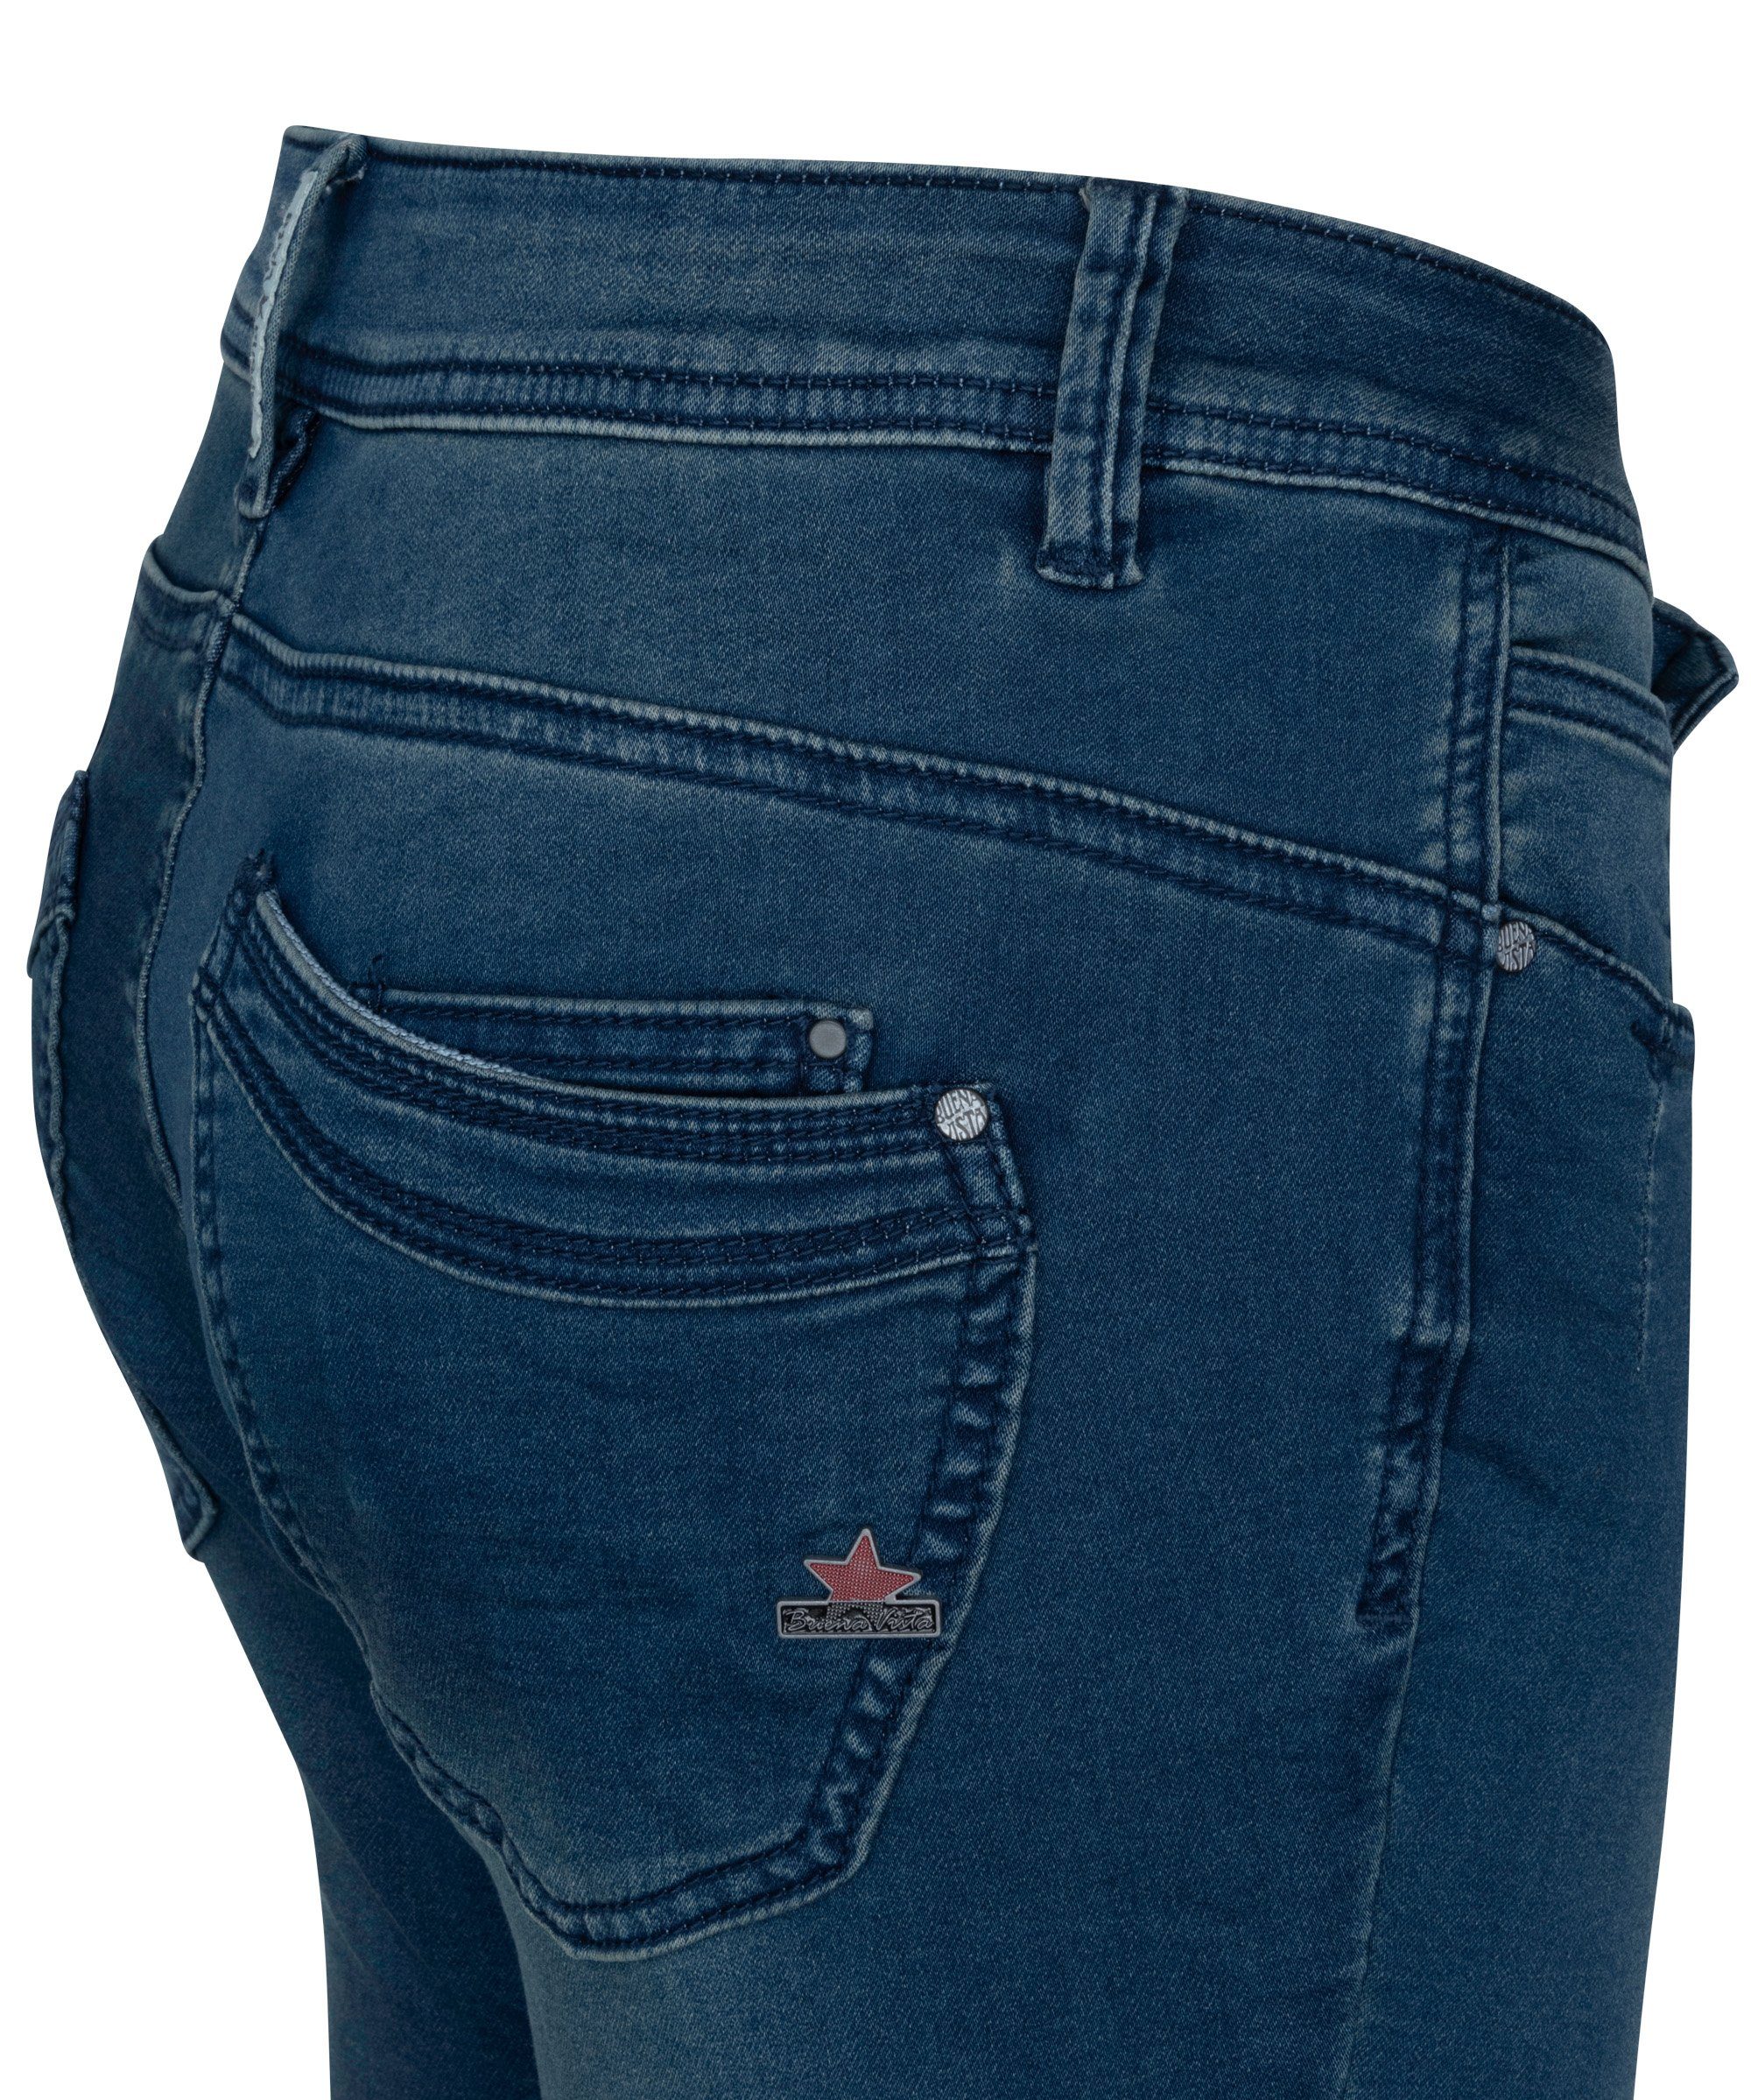 Buena middle - Denim Stretch-Jeans Sweat blue SD103.4220 Vista B5001 MALIBU BUENA VISTA 2307